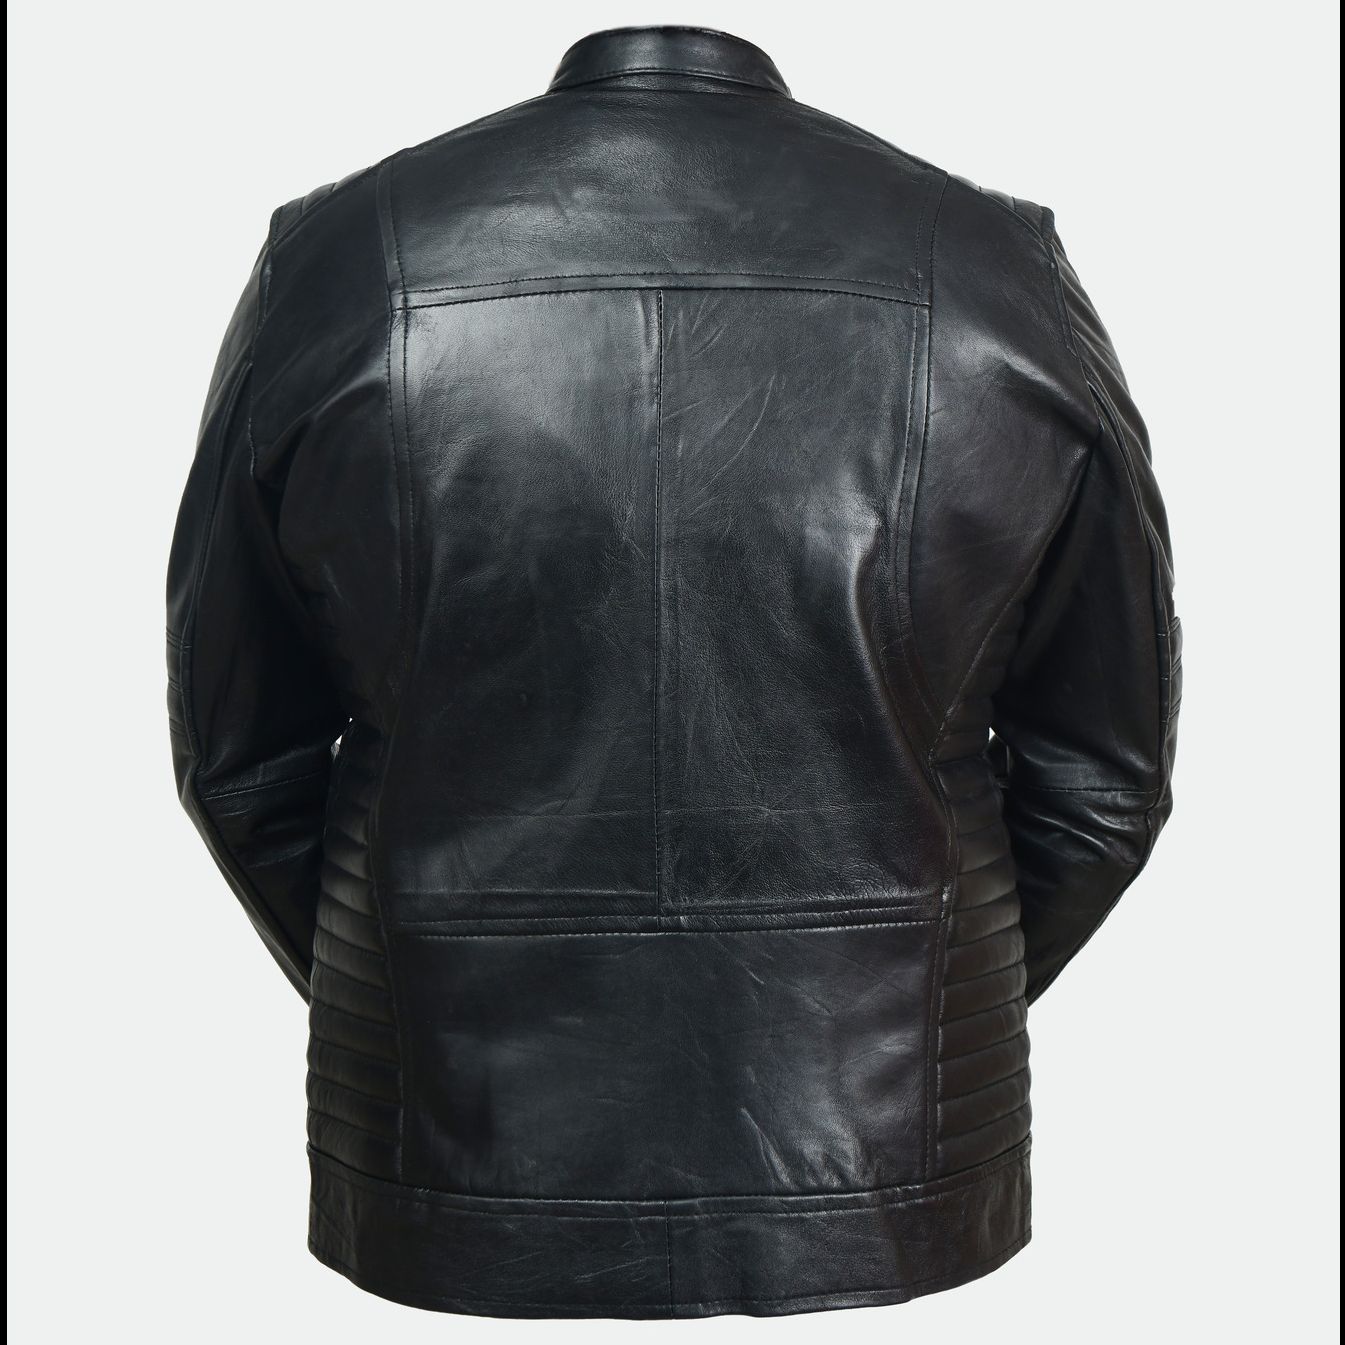 Black Leather Jacket For Men (100% Original Leather)